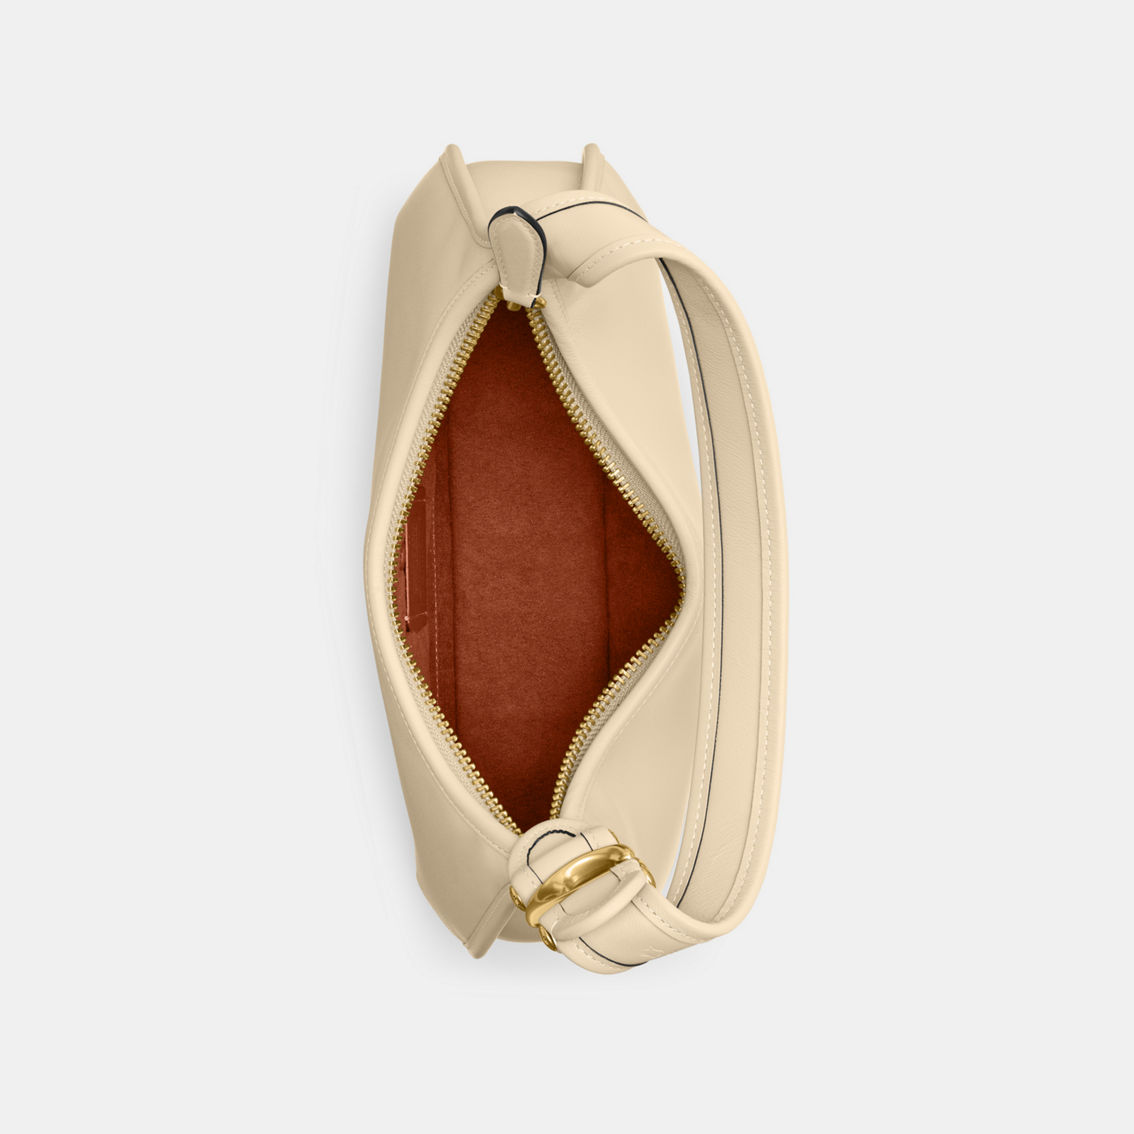 COACH Glovetanned Leather Eve Shoulder Bag - Image 4 of 5